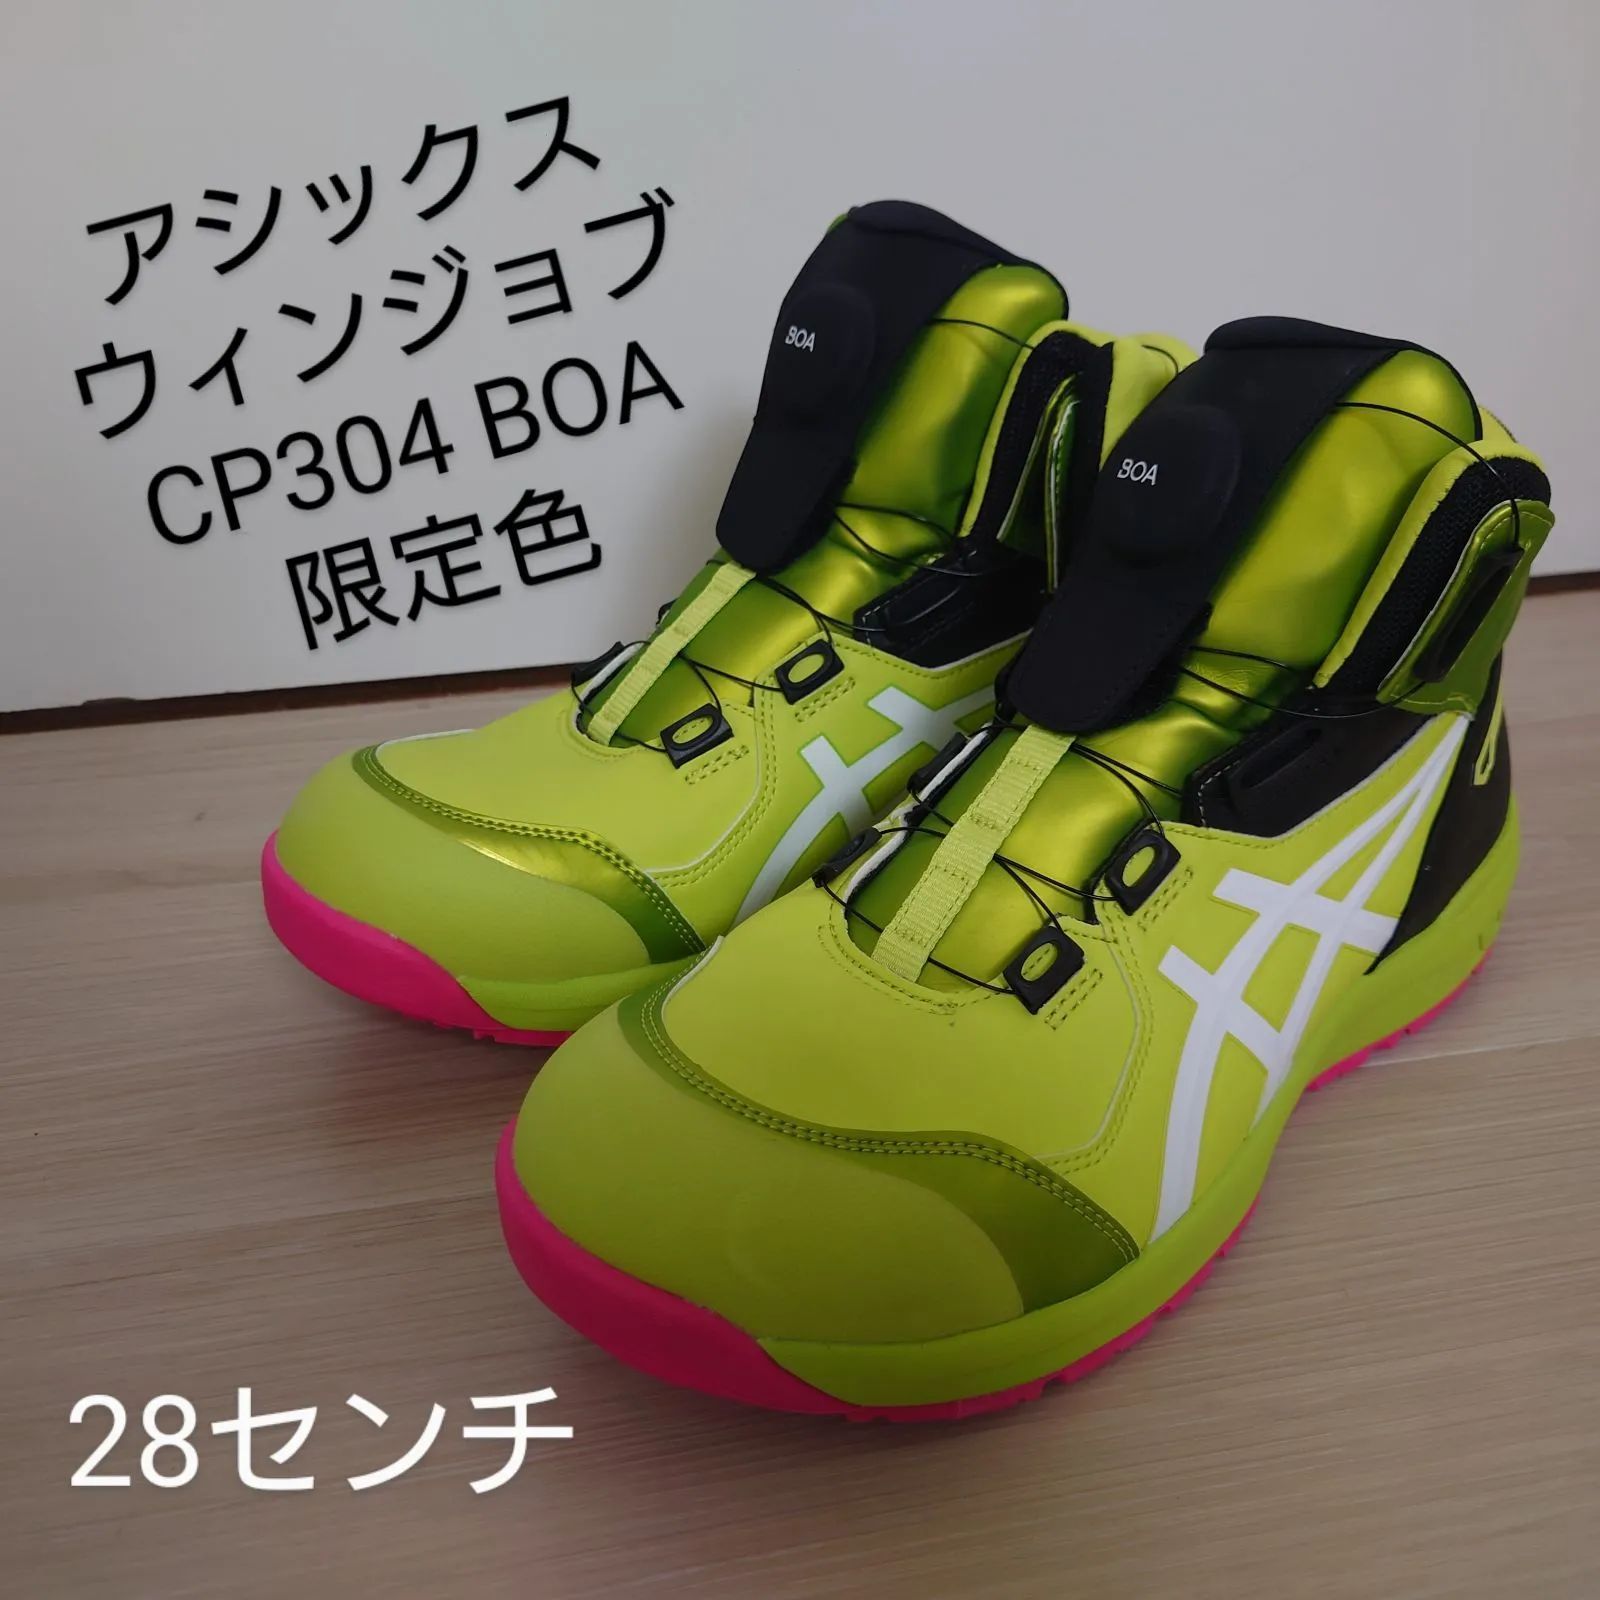 このままご購入可能ですCP304 アシックス 限定 色 カラー BOA 安全靴 ネオンライム 28.0